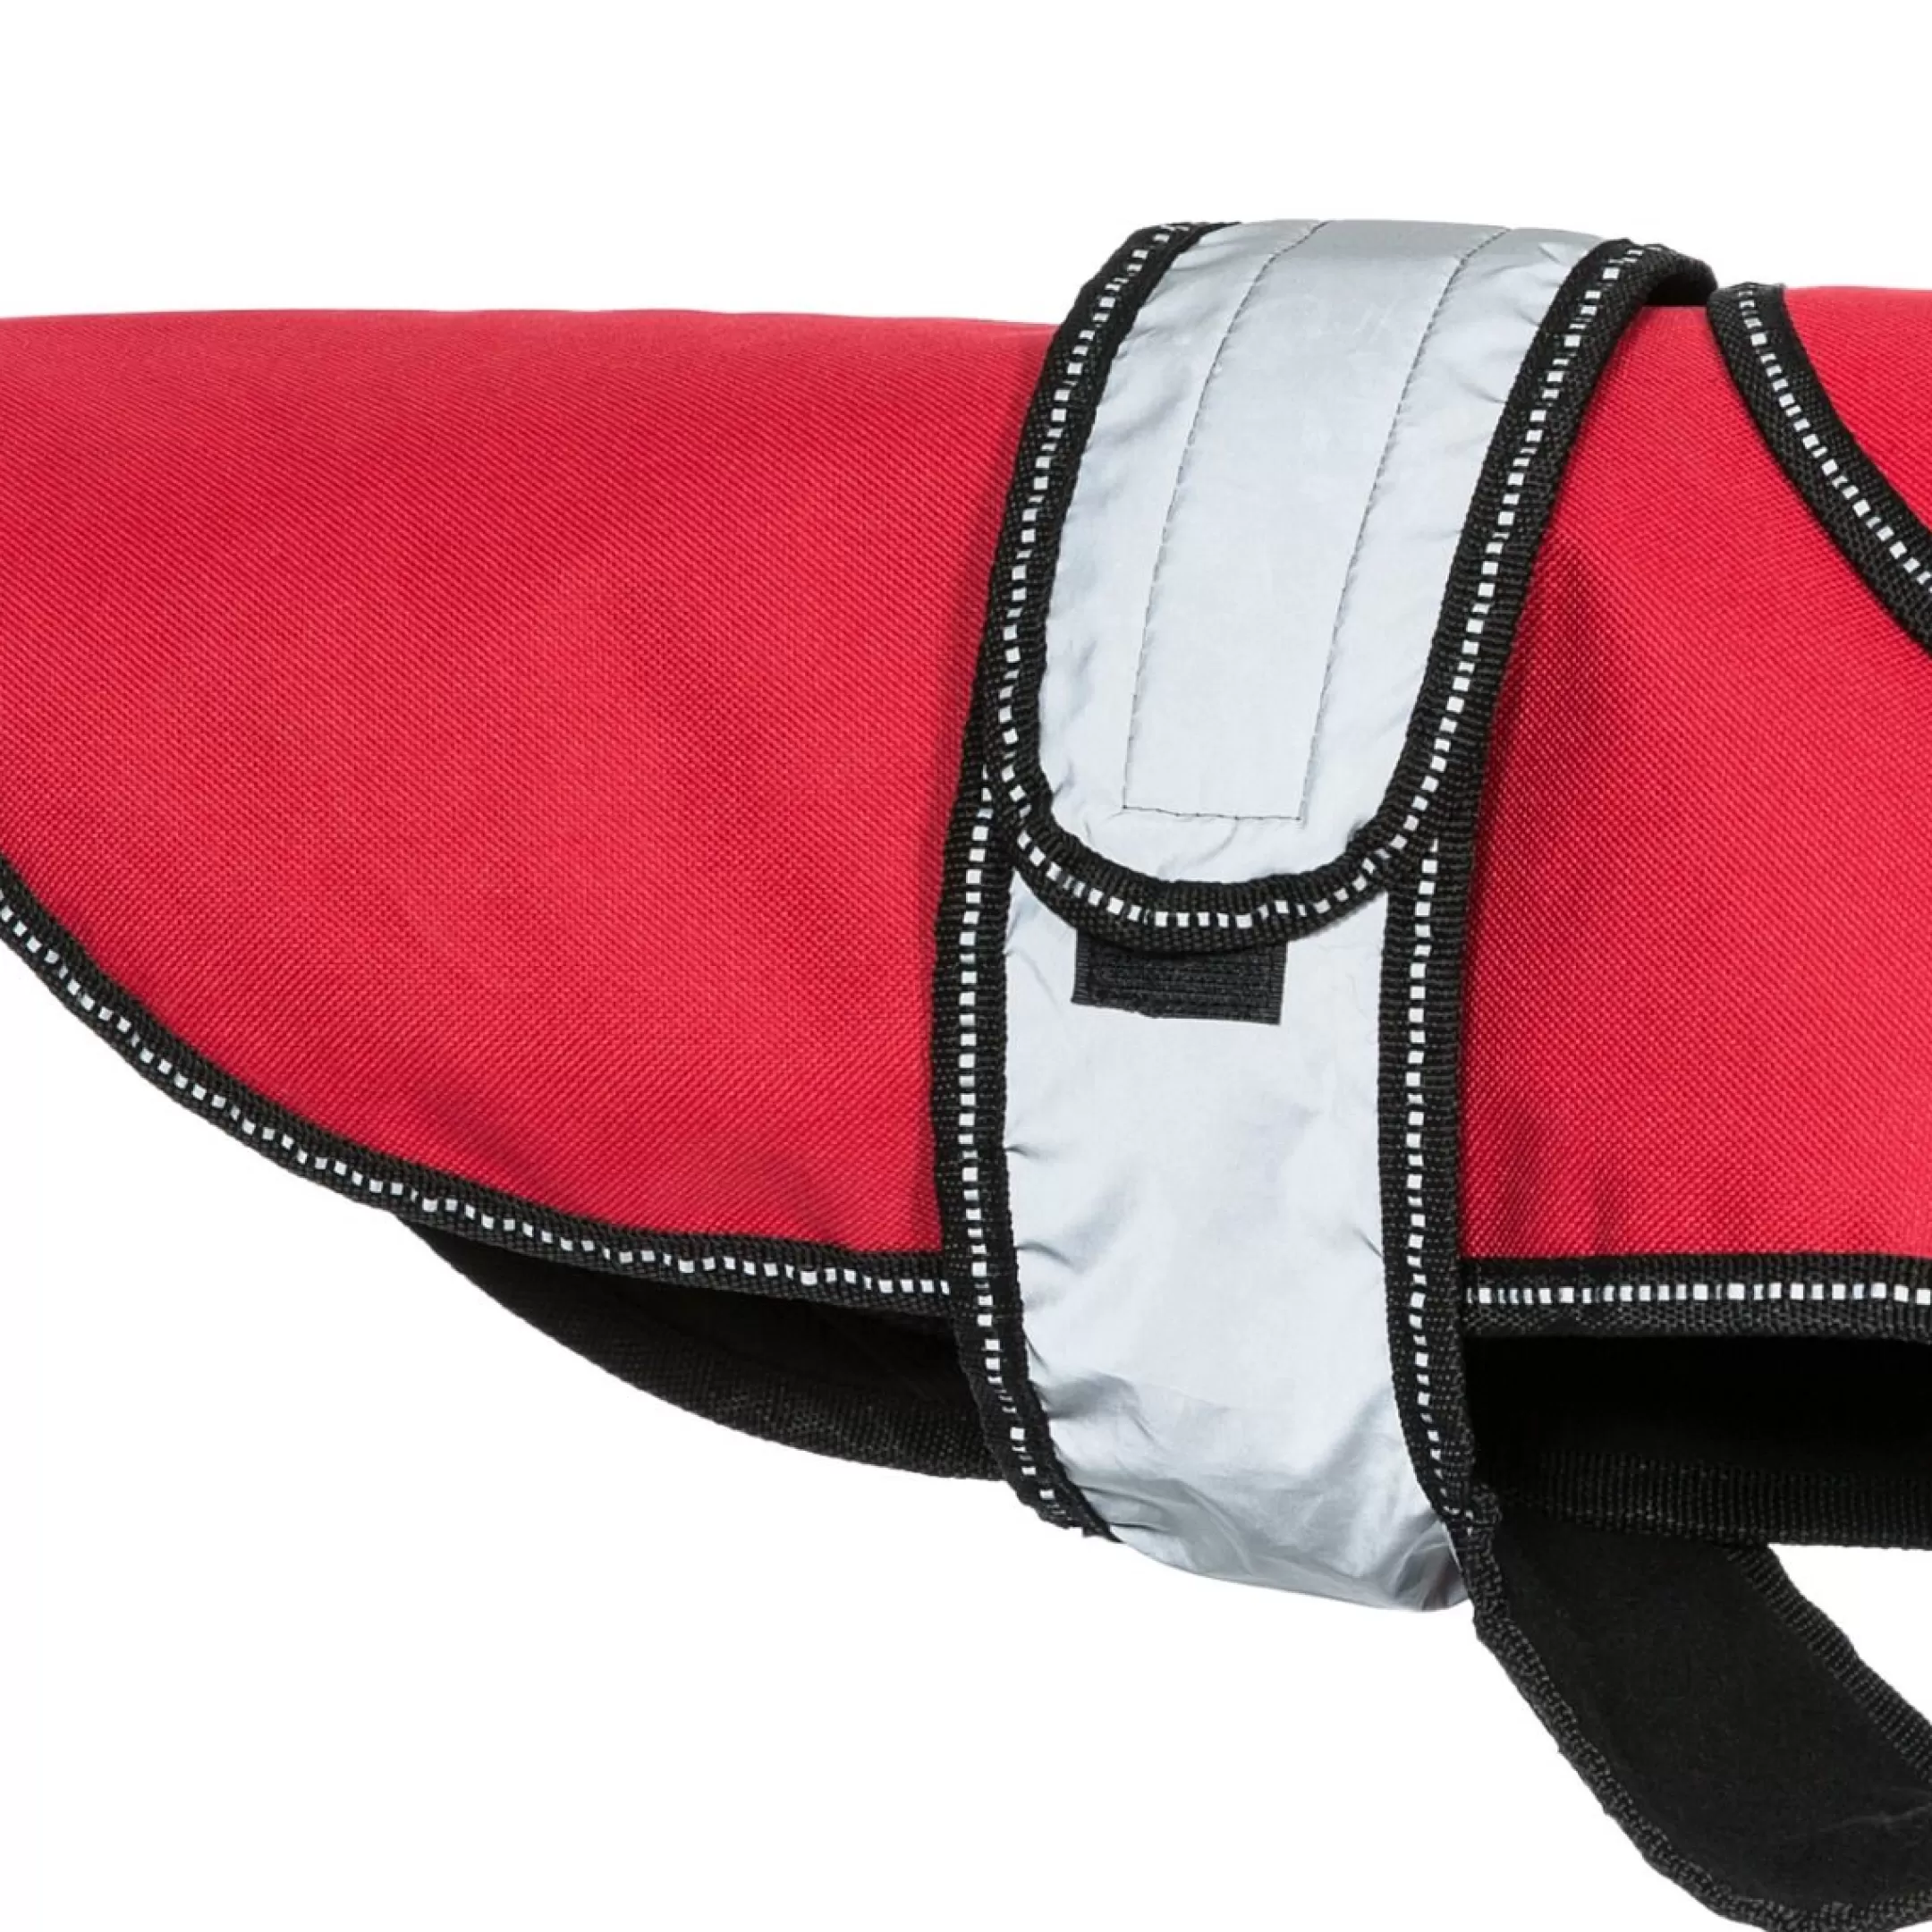 Trespaws XXS 2 in 1 Fleece Lined Waterproof Dog Coat in Red Duke | Trespass Flash Sale